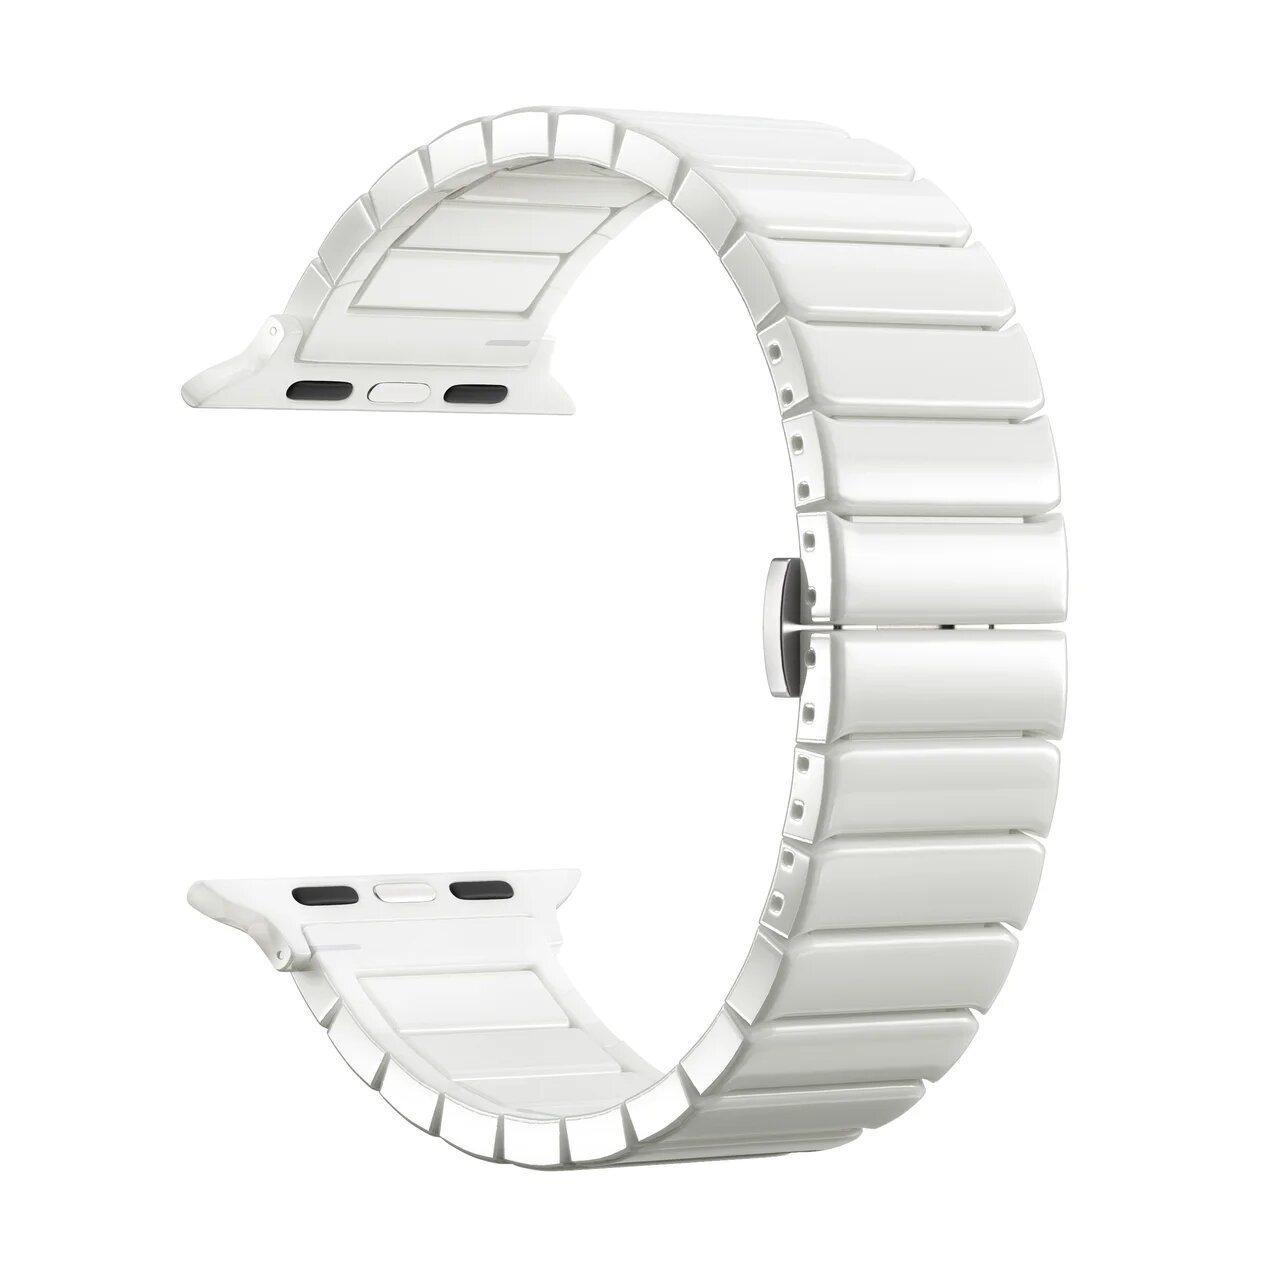 Фото — Керамический ремешок для Apple Watch 42/44 mm LYAMBDA LIBERTAS, белый